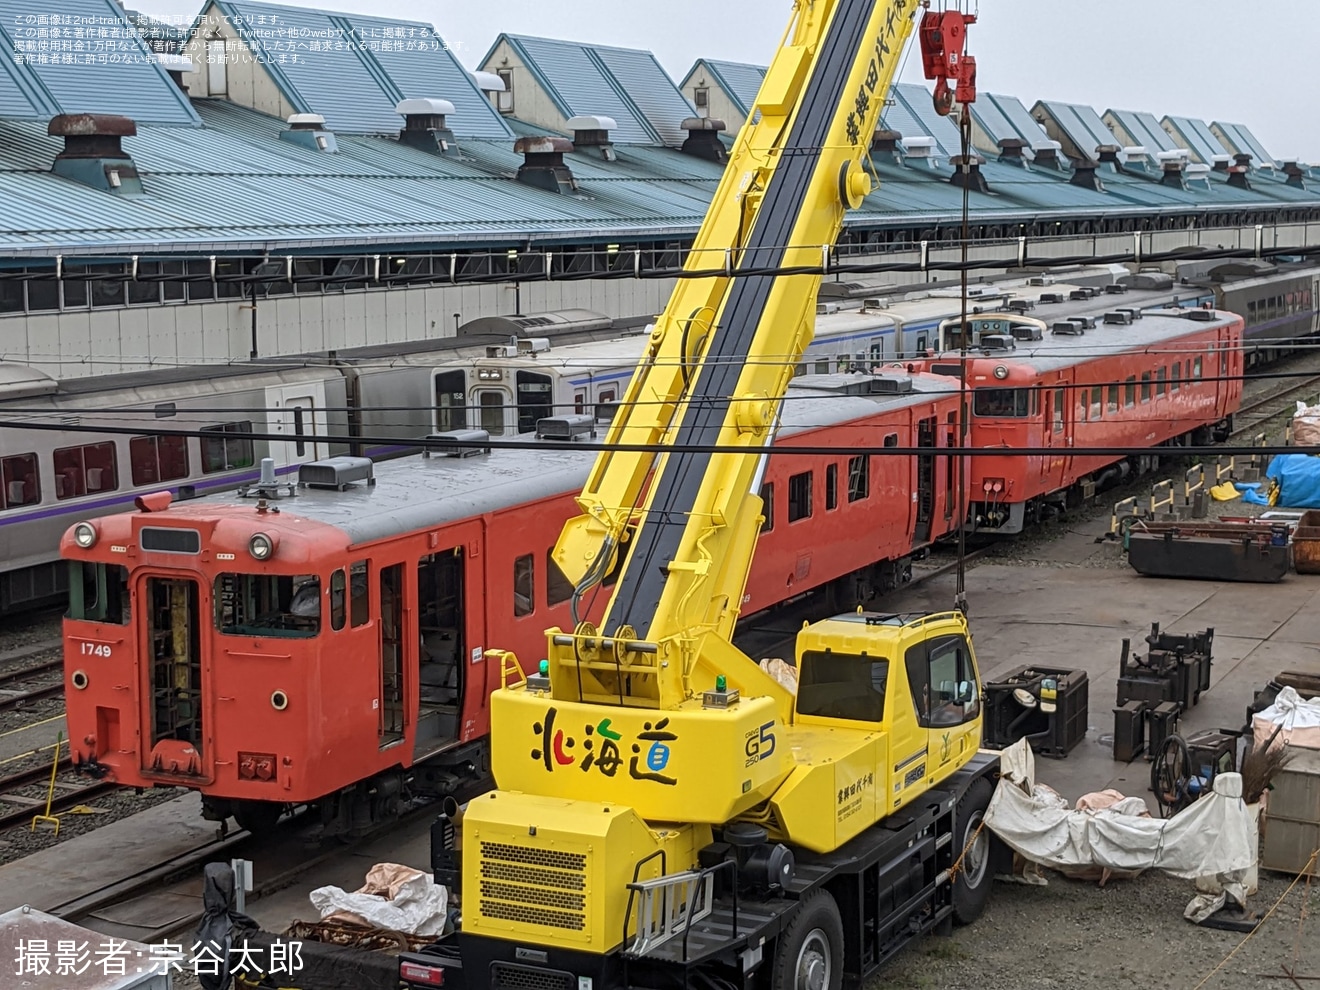 【JR北】キハ40-1749(首都圏色)が釧路運輸車両所で解体作業開始の拡大写真